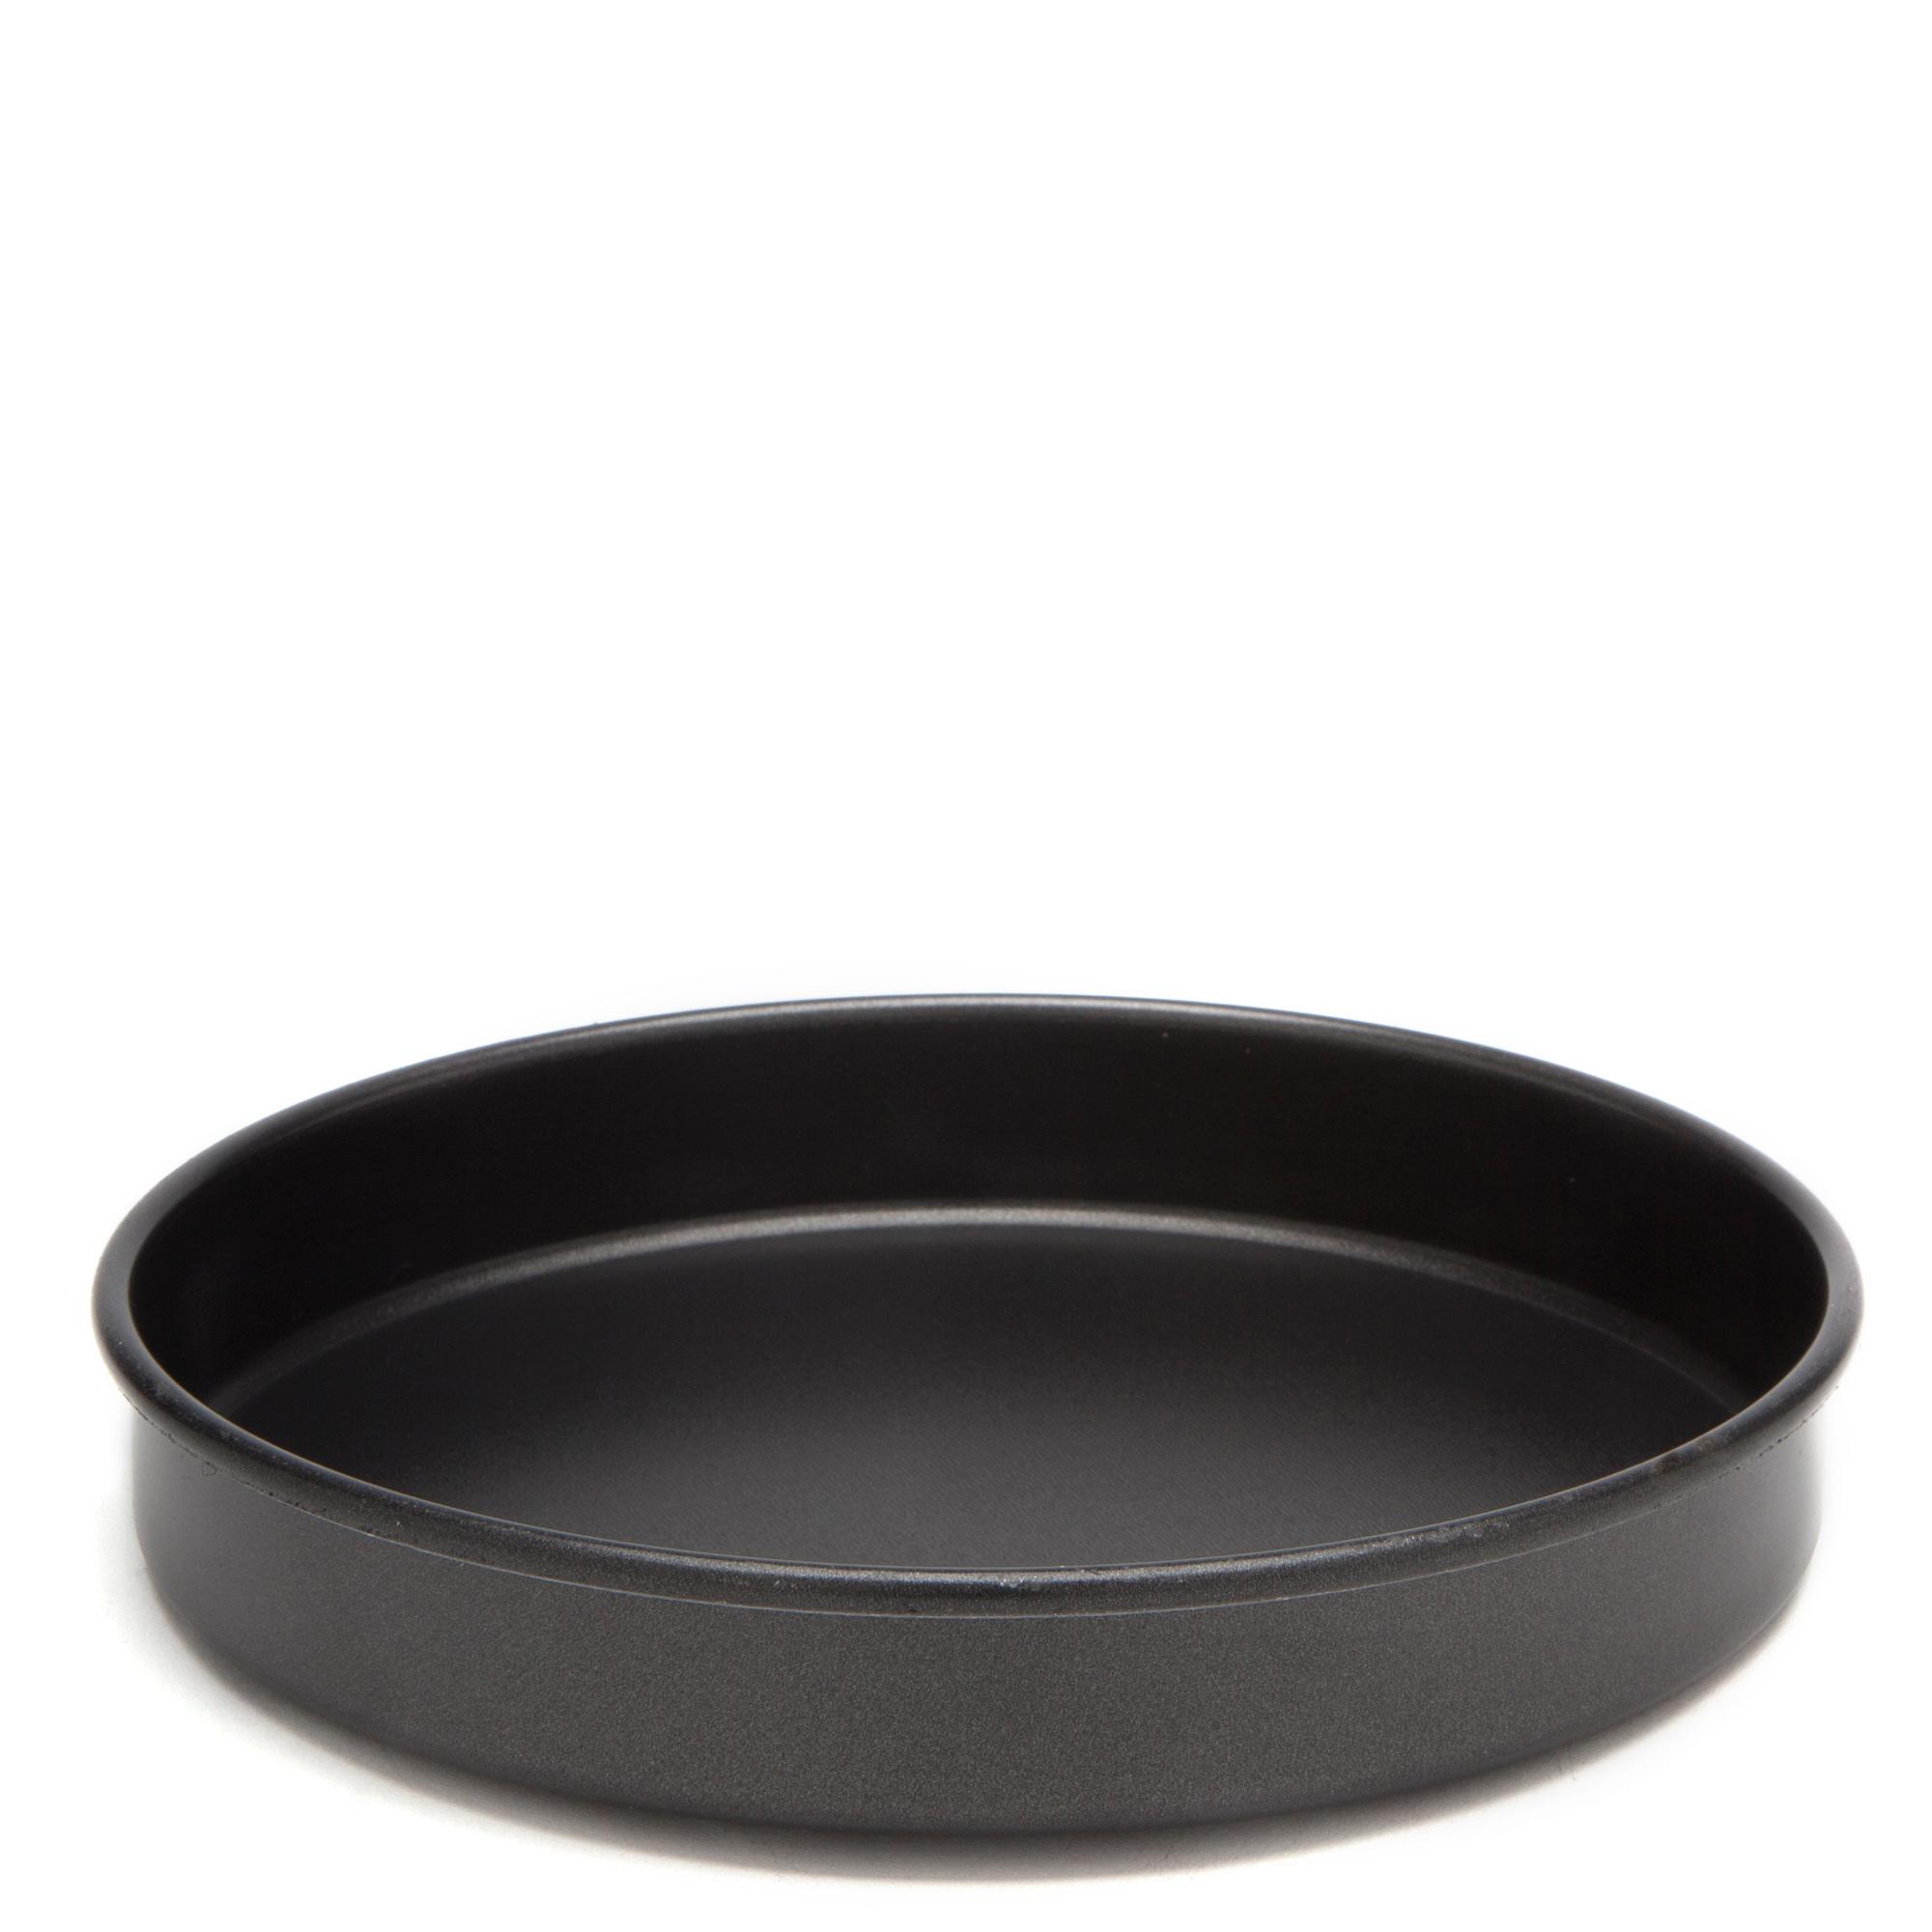 Trangia Non - Stick Frypan (trangia 25 Series) - Black/black  Black/black